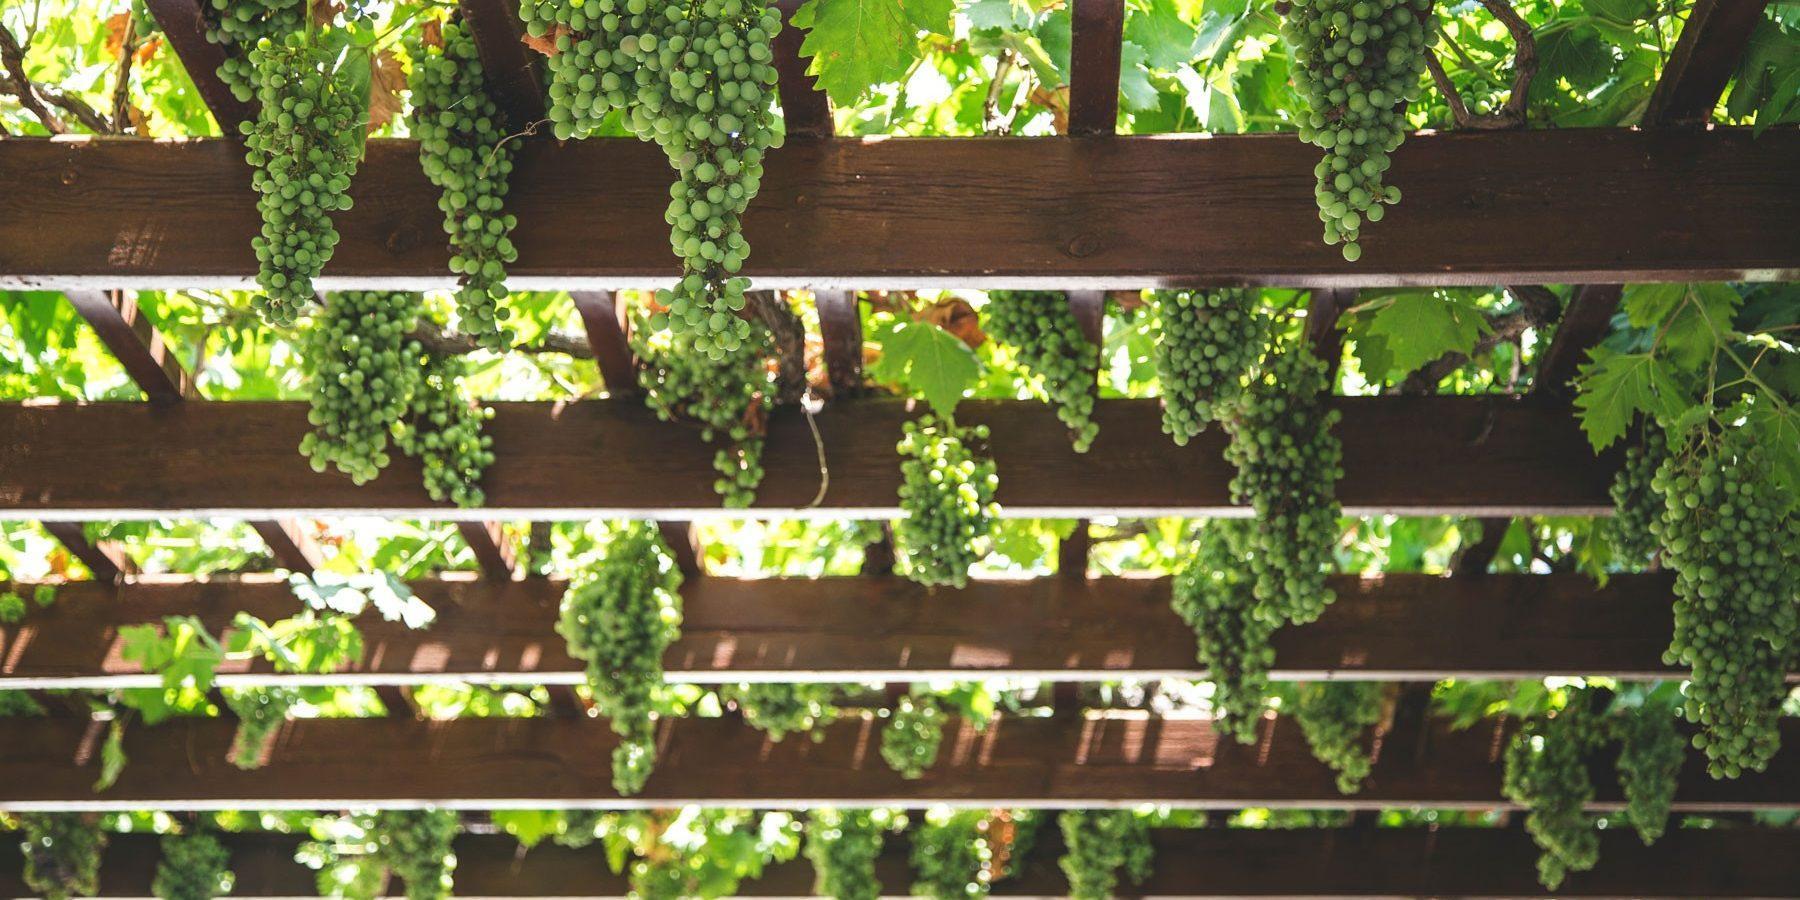 Fresno Wedding Location - green grapes on trellis